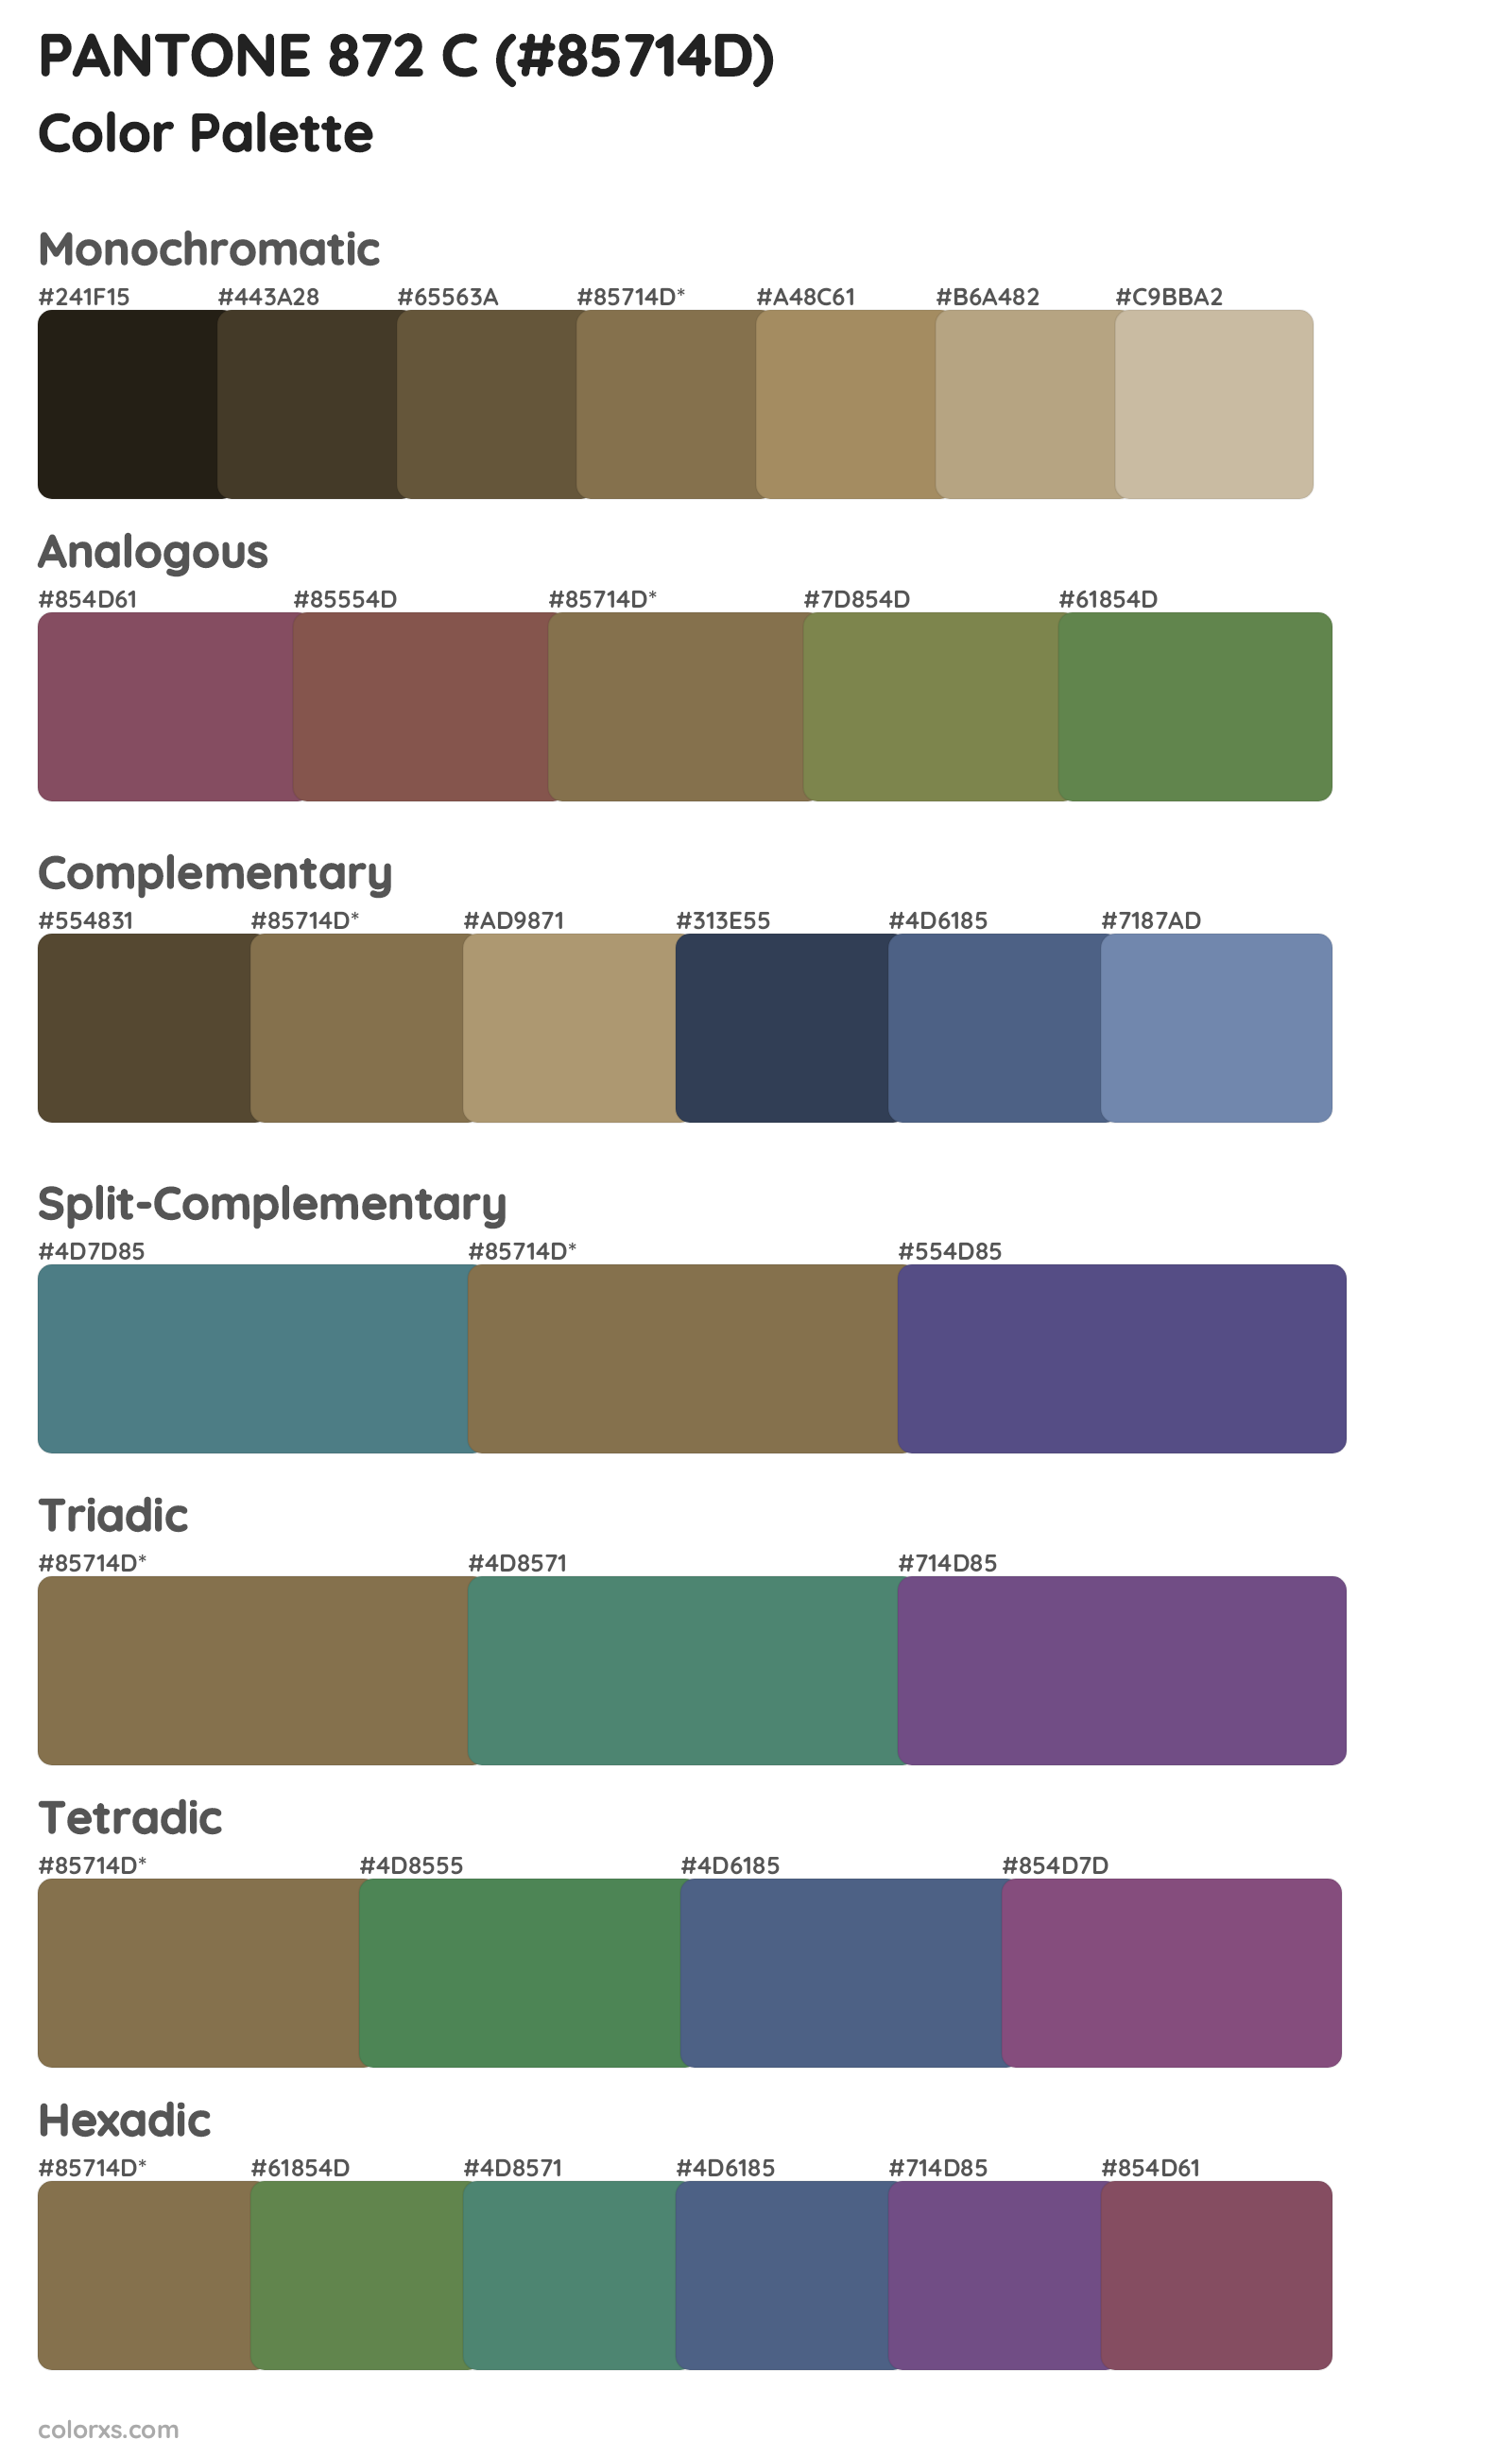 PANTONE 872 C Color Scheme Palettes